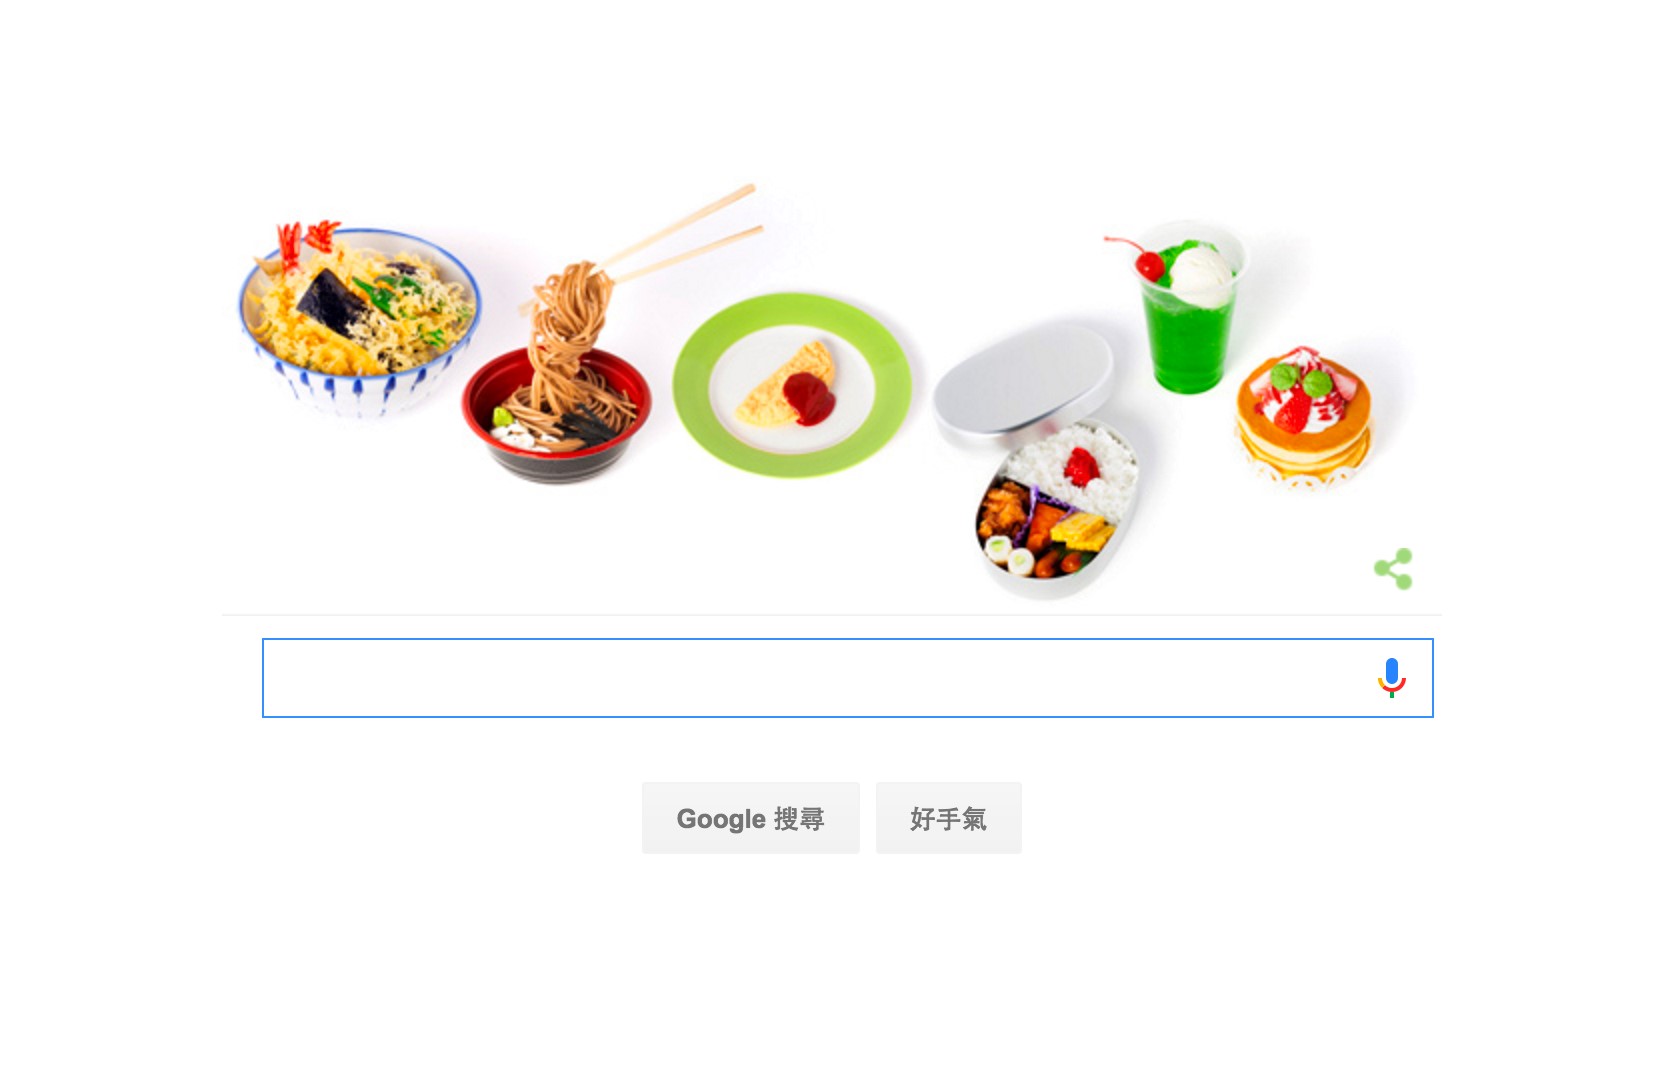 2016年9月12日Google首頁歡慶日本食品模型始祖岩崎瀧三121歲誕辰